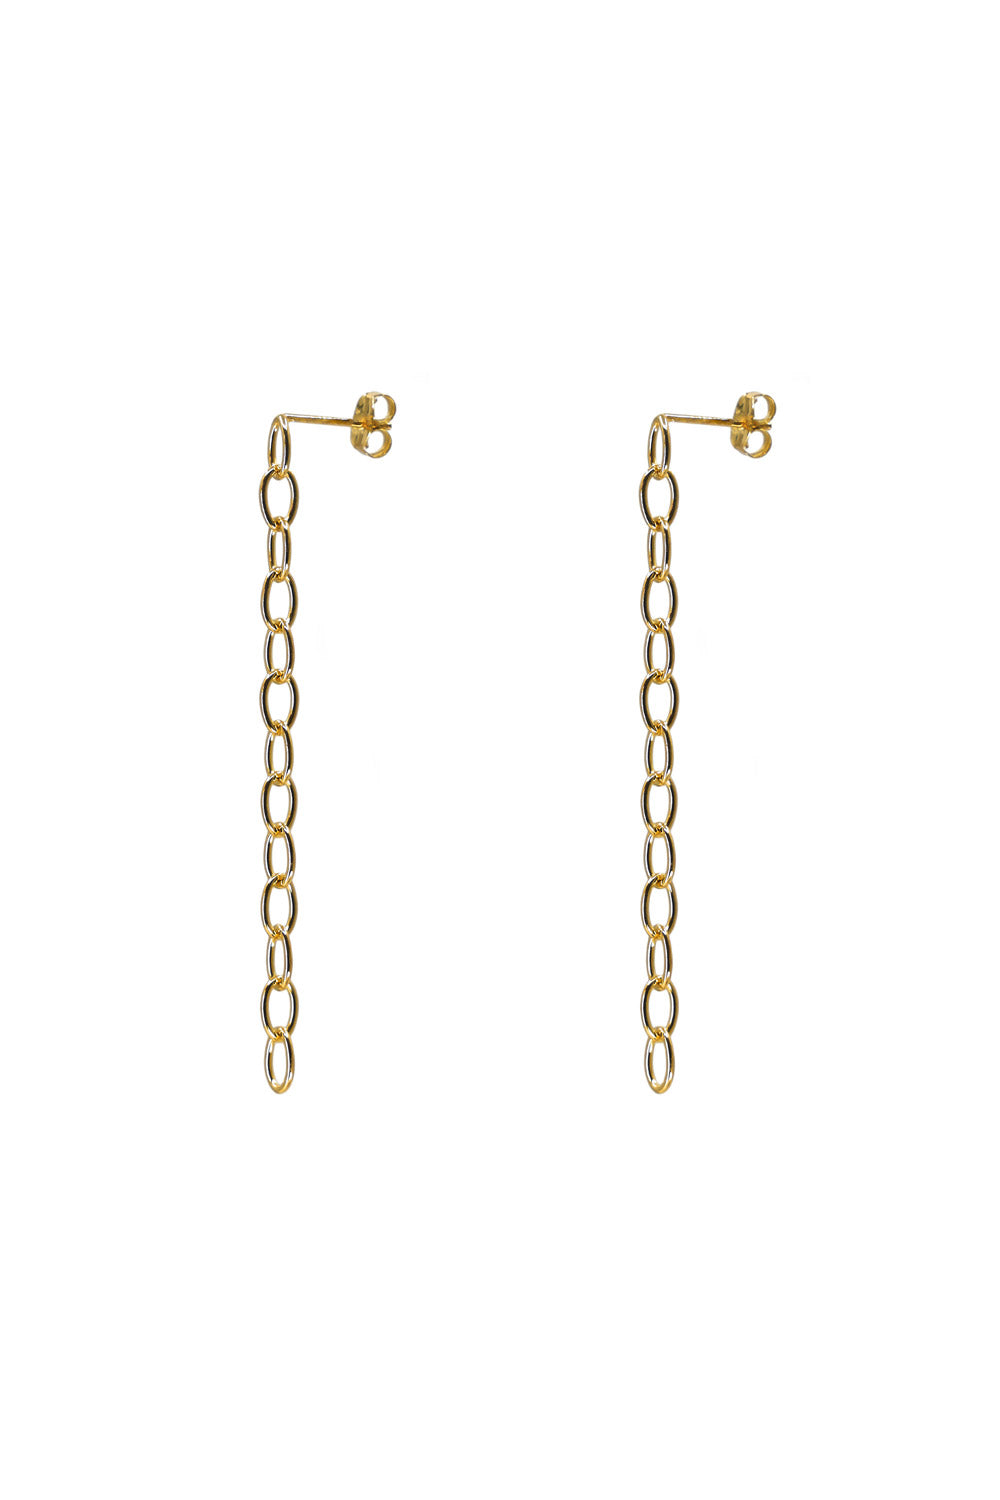 Bianca Mavrick Jewellery Fine Chain Earrings Gold Long